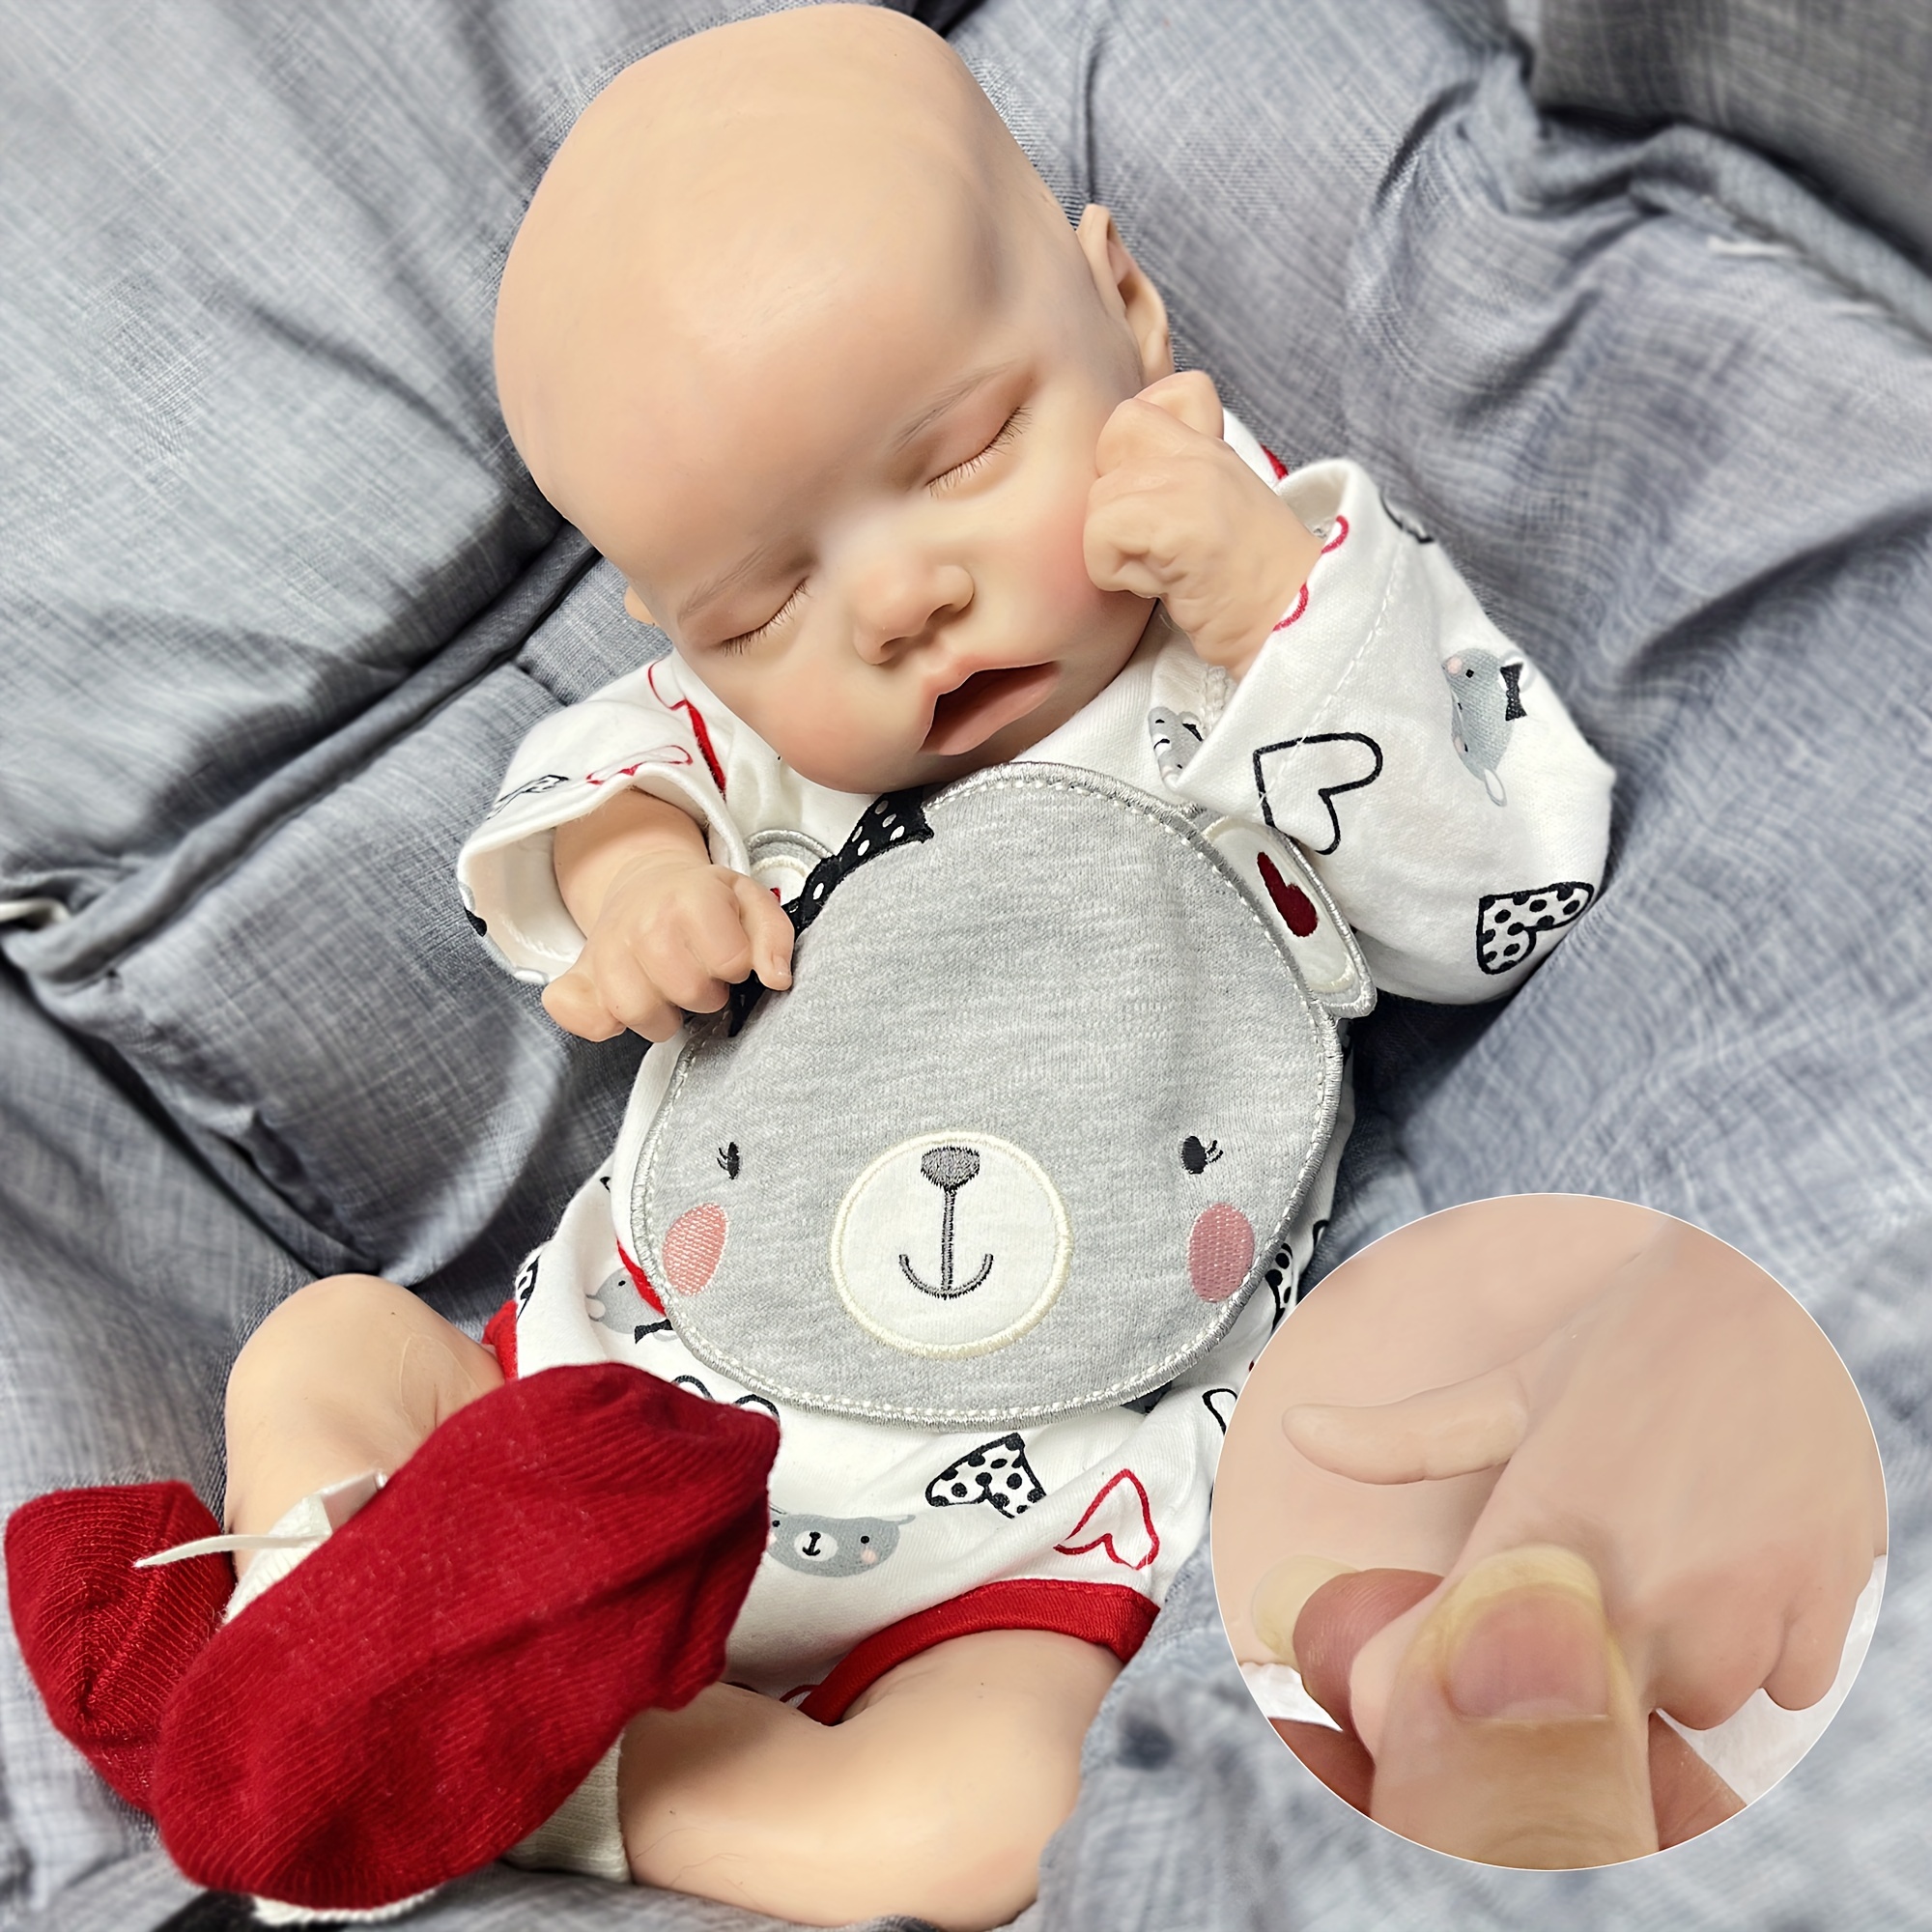 18Inch Twins Reborn Baby Doll Lifelike Full Body Silicone Doll Newborn Girl  Gift